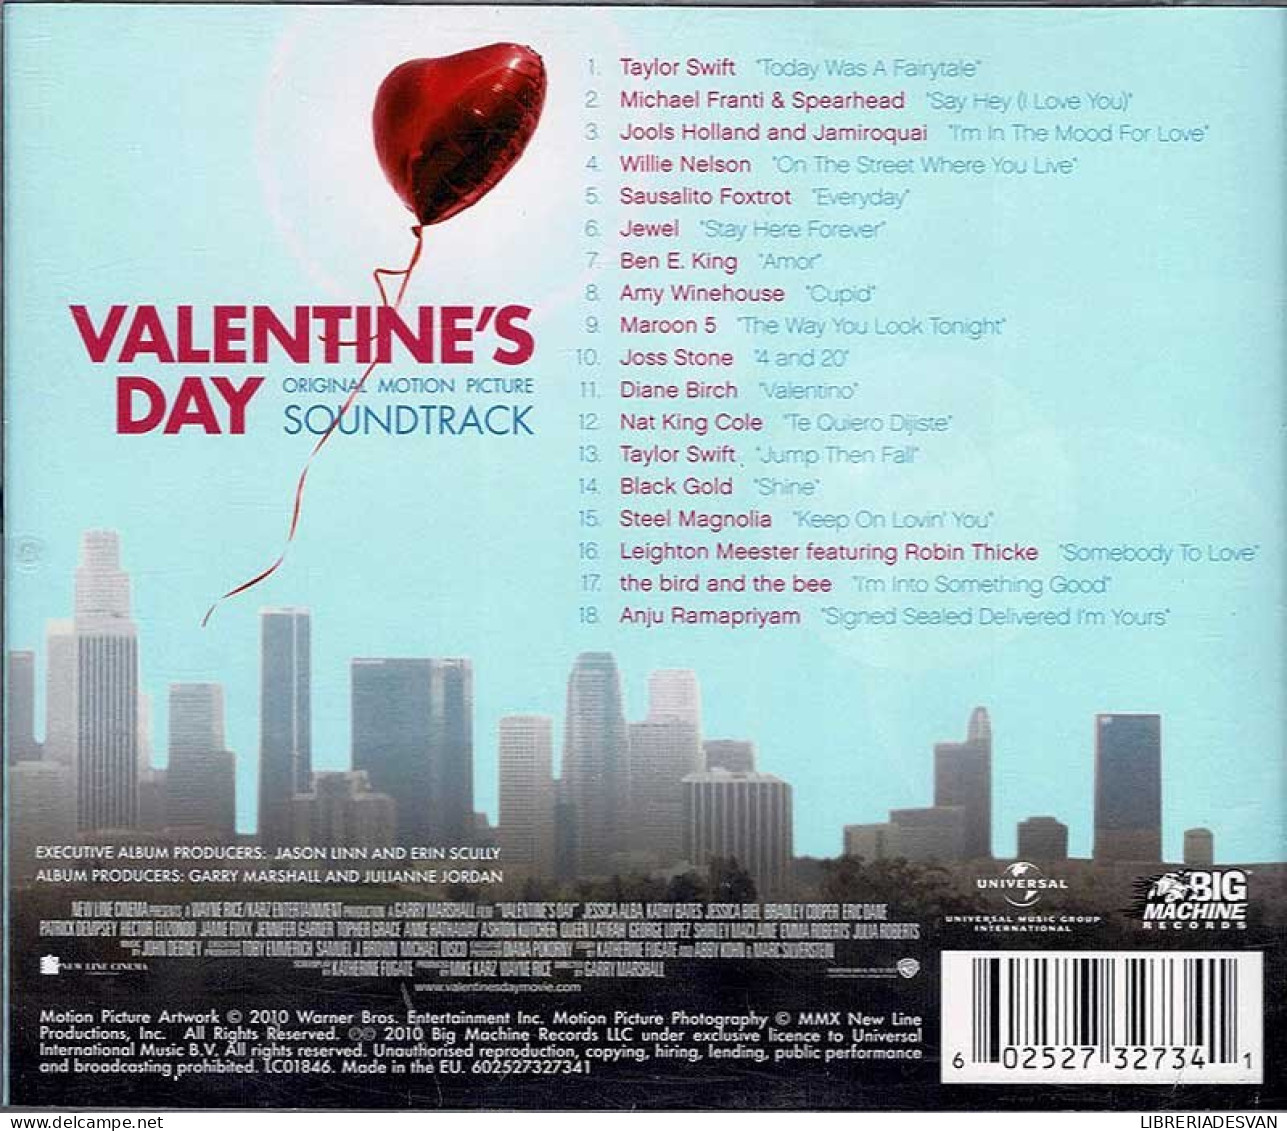 Valentine's Day - Original Motion Picture Soundtrack. CD - Música De Peliculas